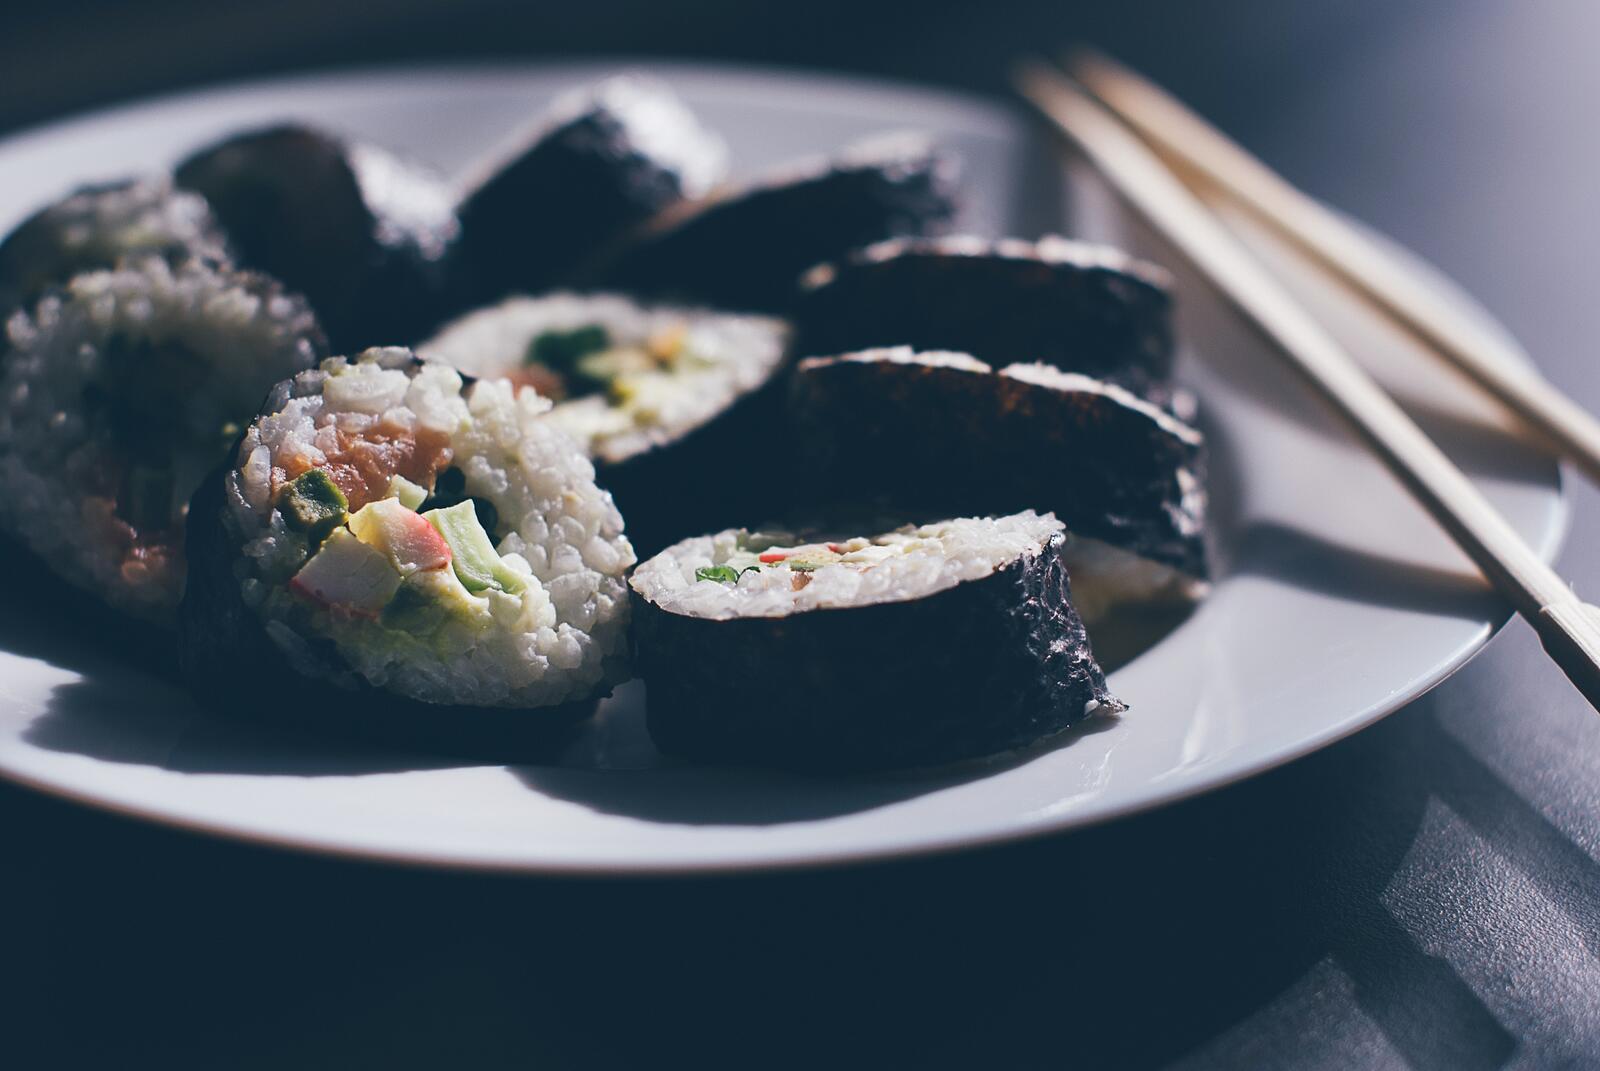 免费照片用筷子把寿司放在盘子里